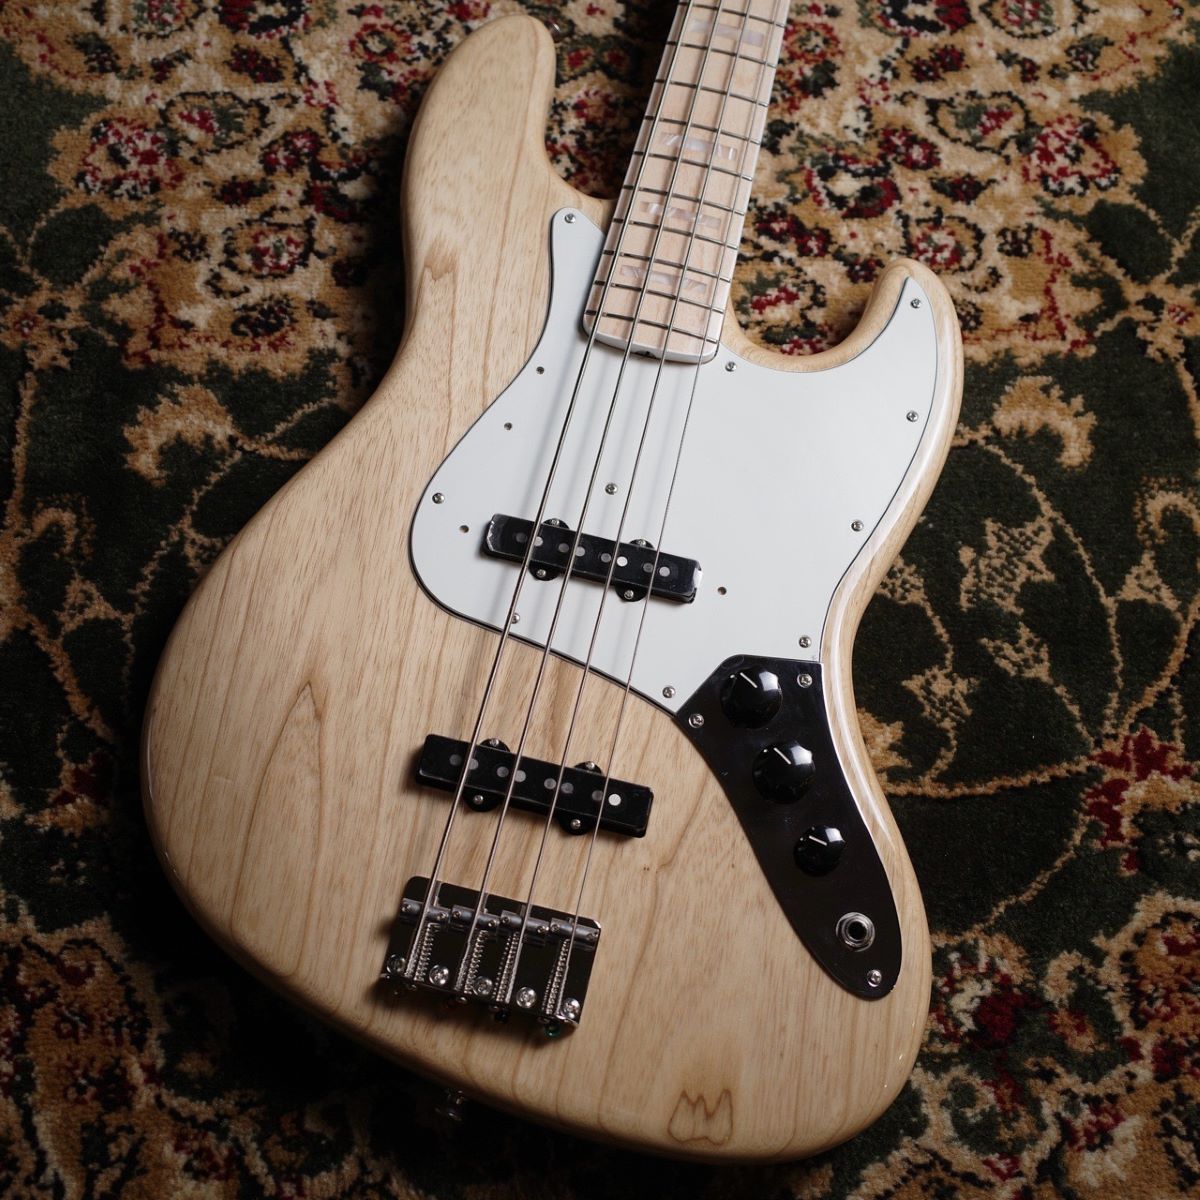 CONTENTSFender Made in Japan Heritage 70s Jazz Bass Maple Fingerboard Naturalこの商品について技術者による安心のアフターフォローギターアドバイザーが楽器選びをサポート最新情報を手に入れよう音楽をもっと楽しみたい方へお問い合わ […]